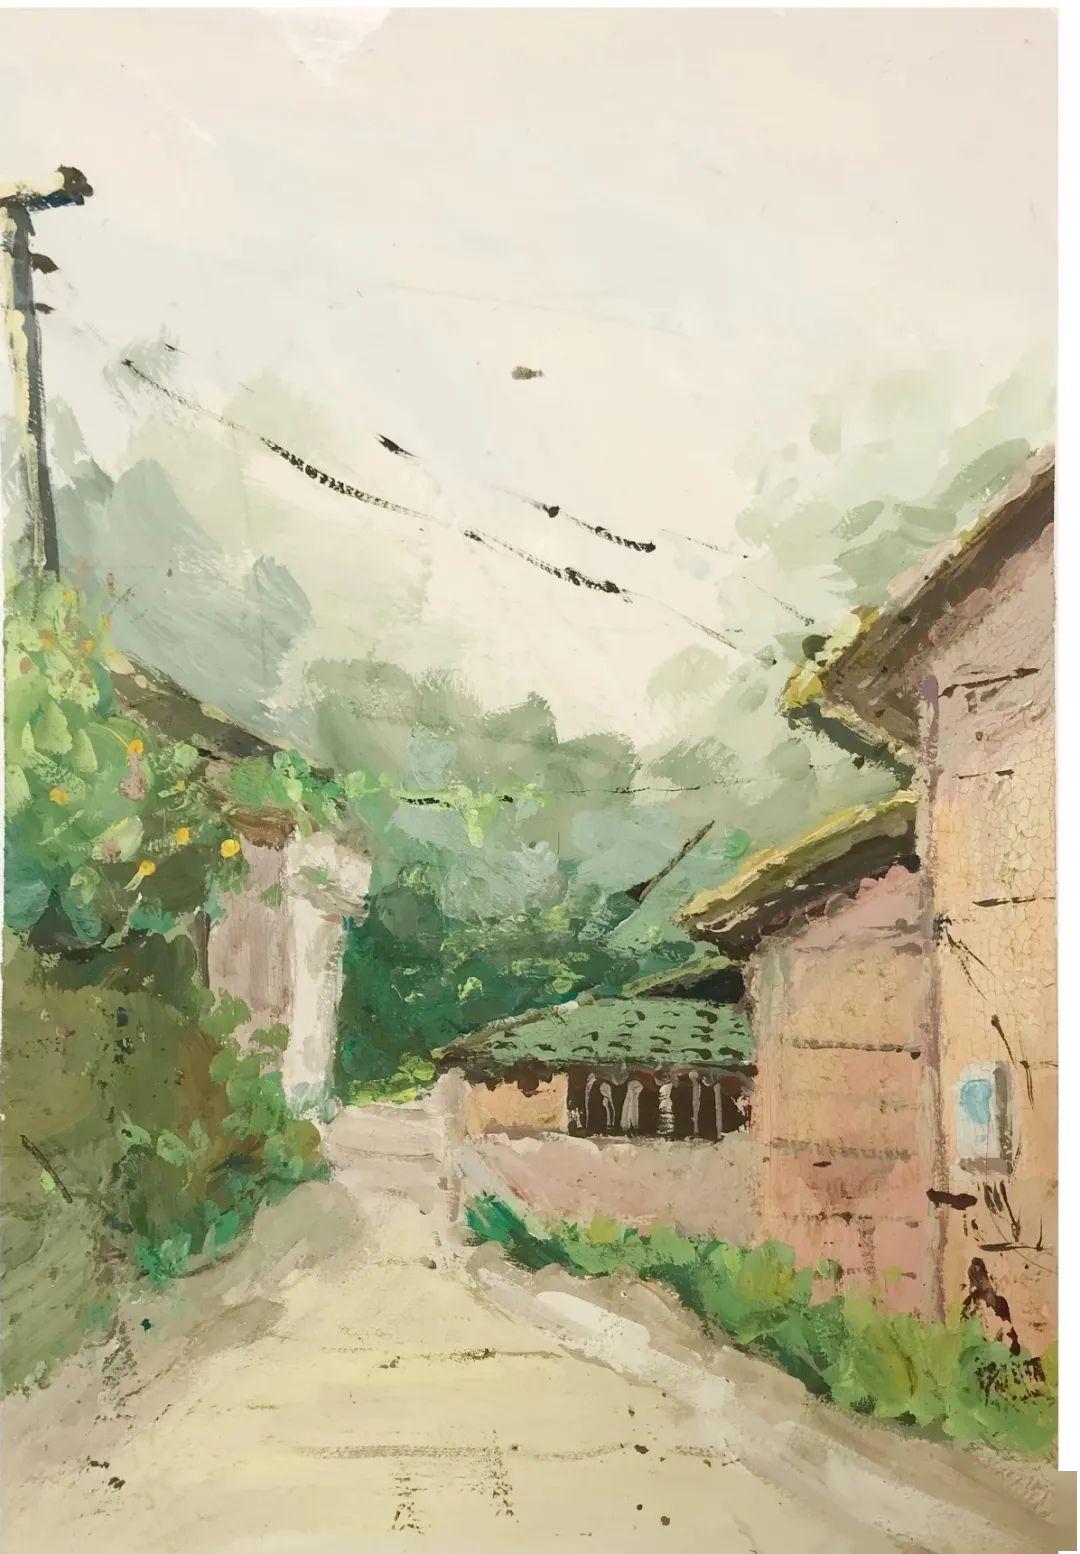 《油画风景临摹与创作》 2018级绘画一班 指导老师:刘正平